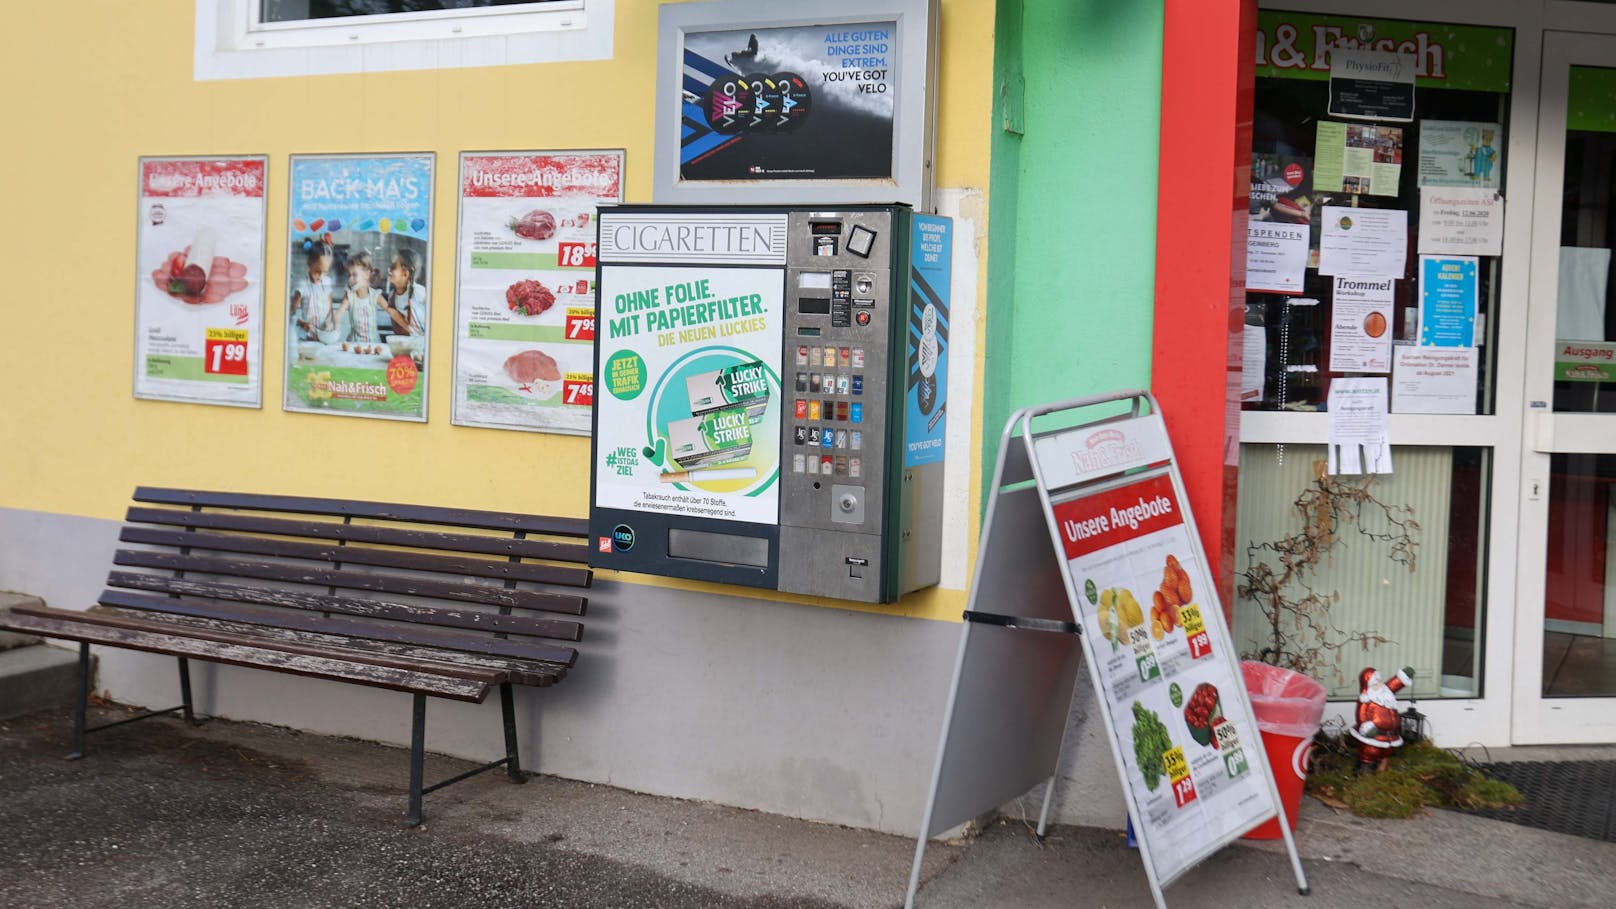 Bei diesem Zigarettenautomaten in Geinberg sollen die mutmaßlichen Täter 23 Packerl Zigaretten gekauft haben.